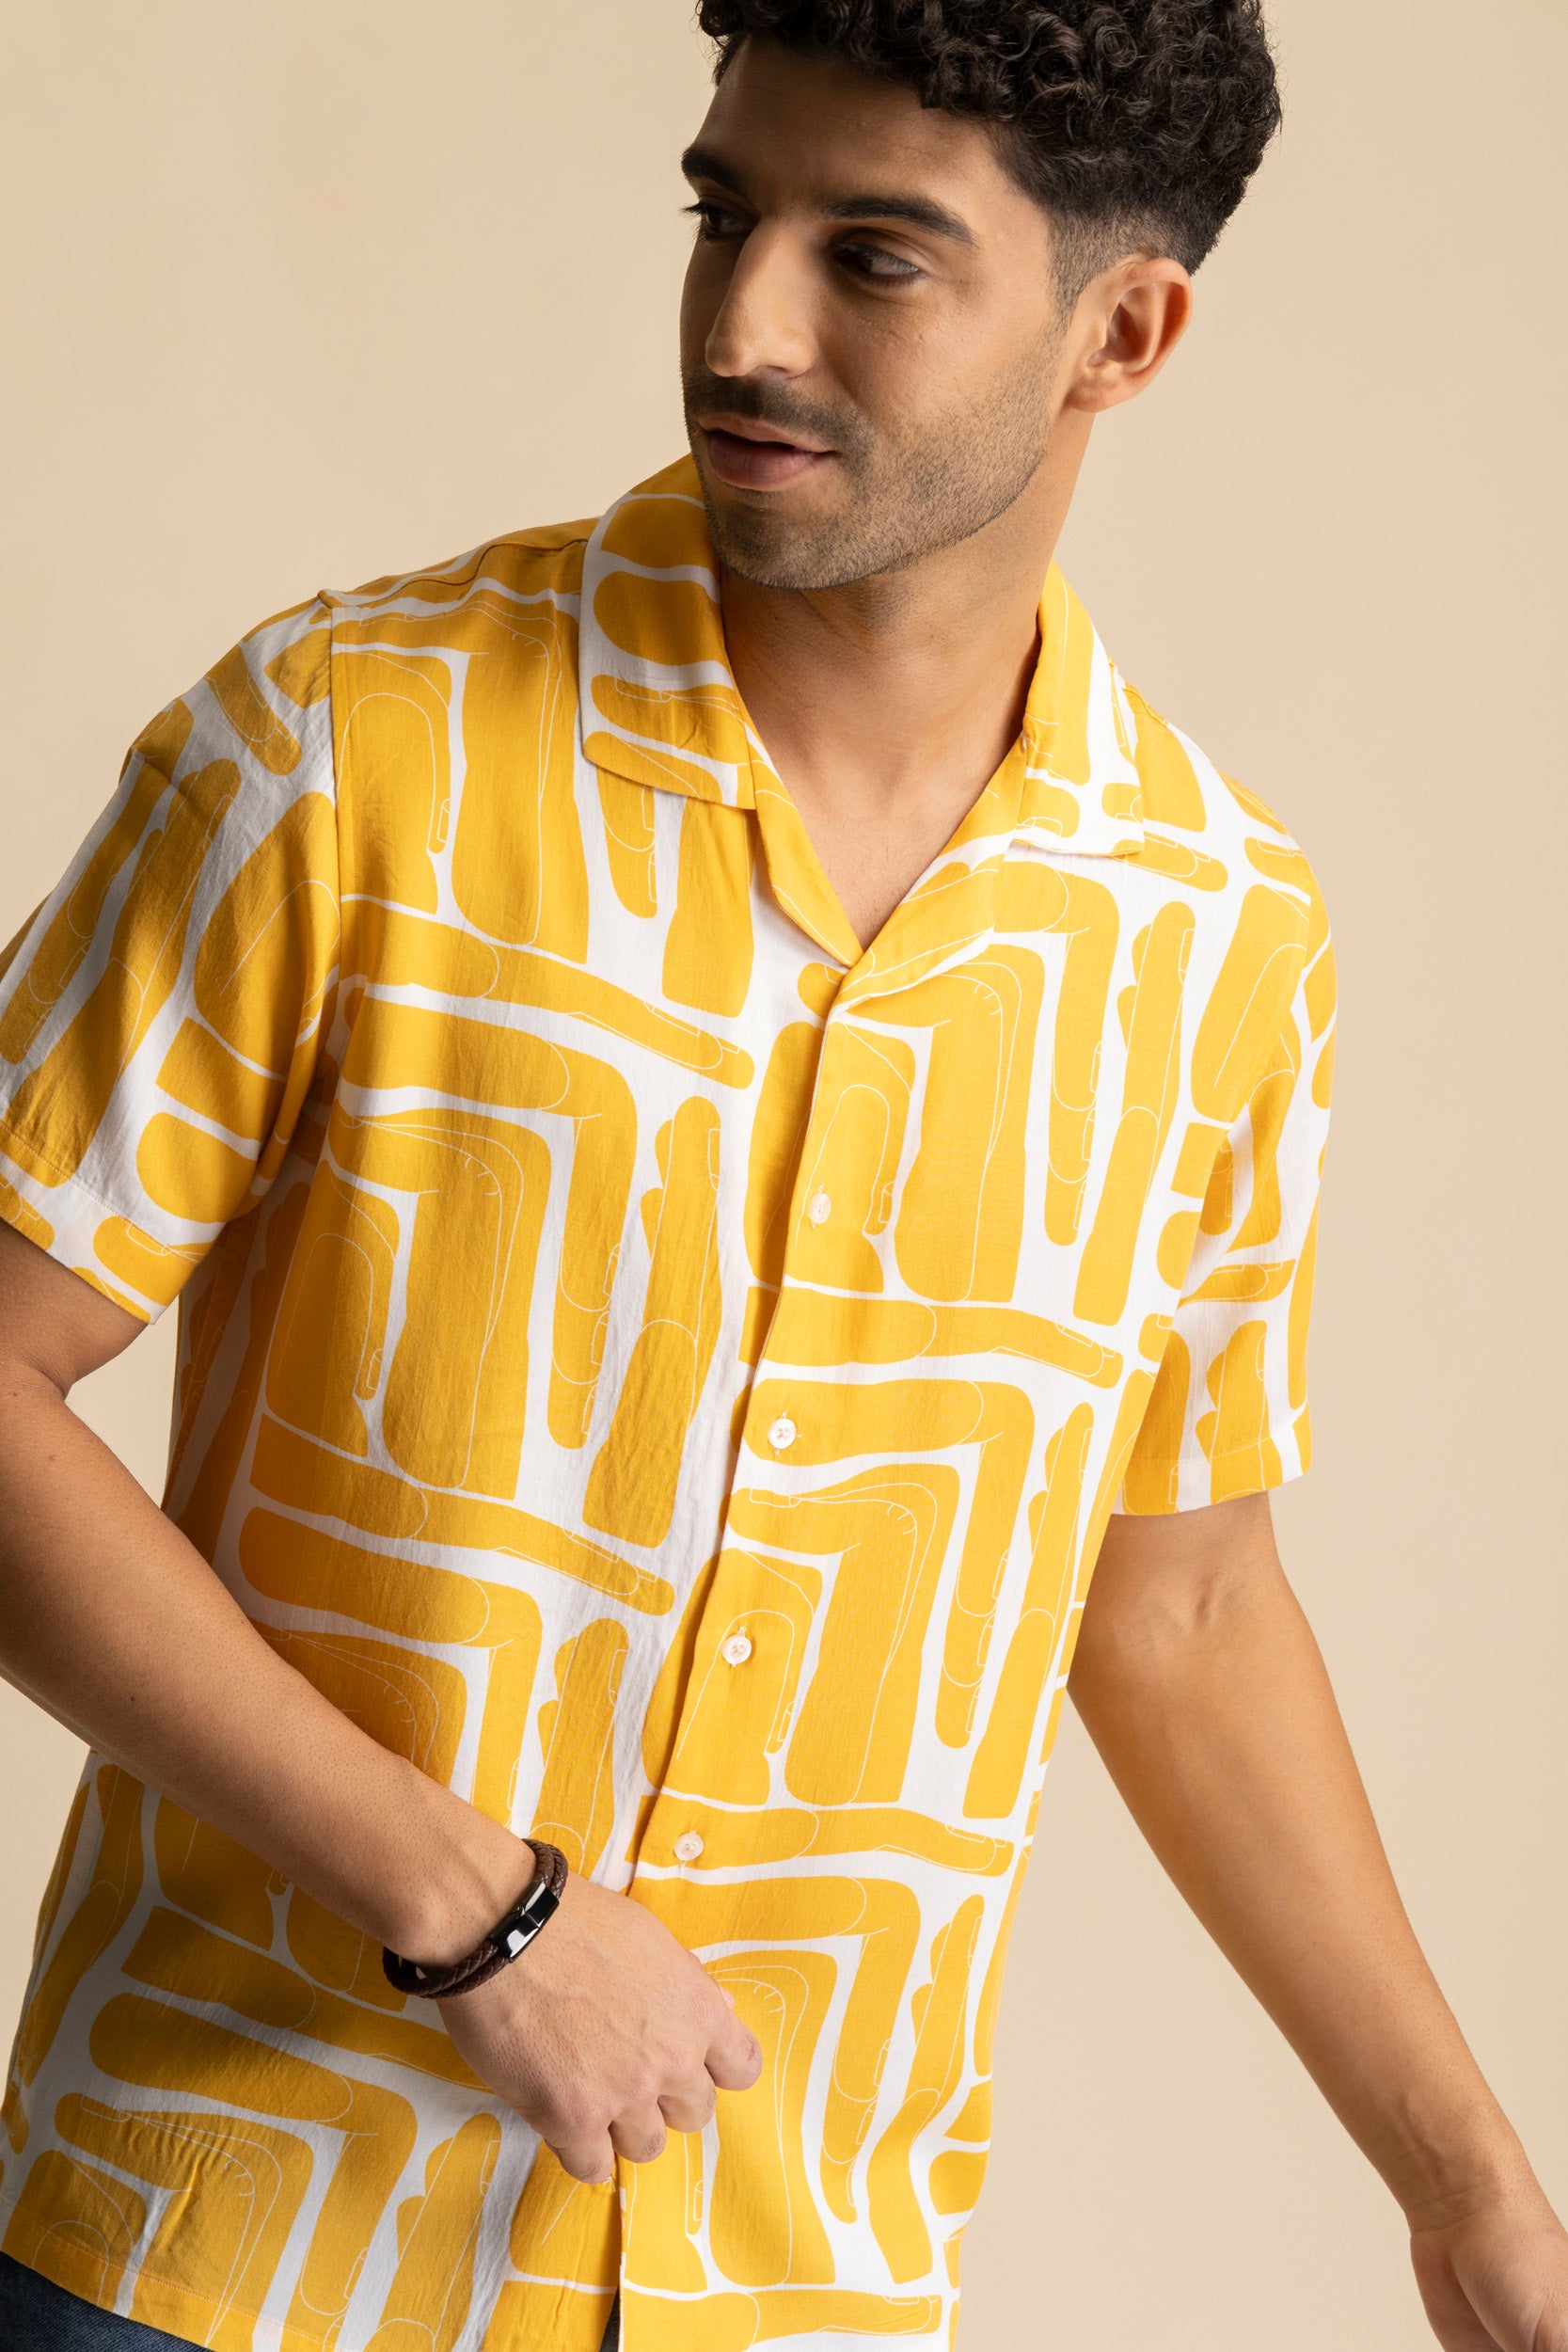 Lemoncello Cuban Shirt